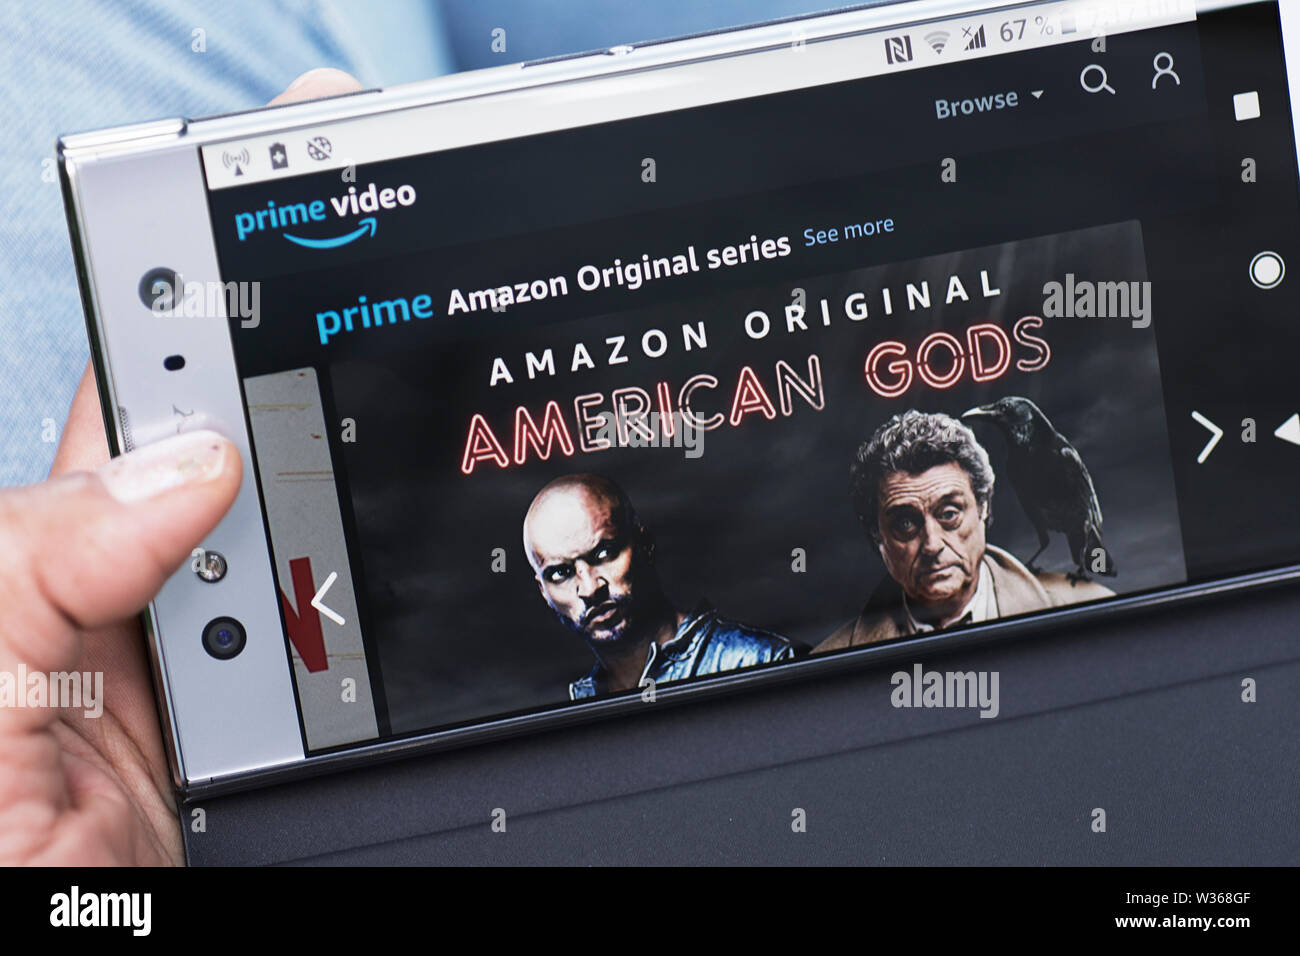 PrimeVideo AMAZON Amazon, le premier de la série d'origine, American Gods site web streaming Film onSmartphone écran du téléphone mobile Banque D'Images